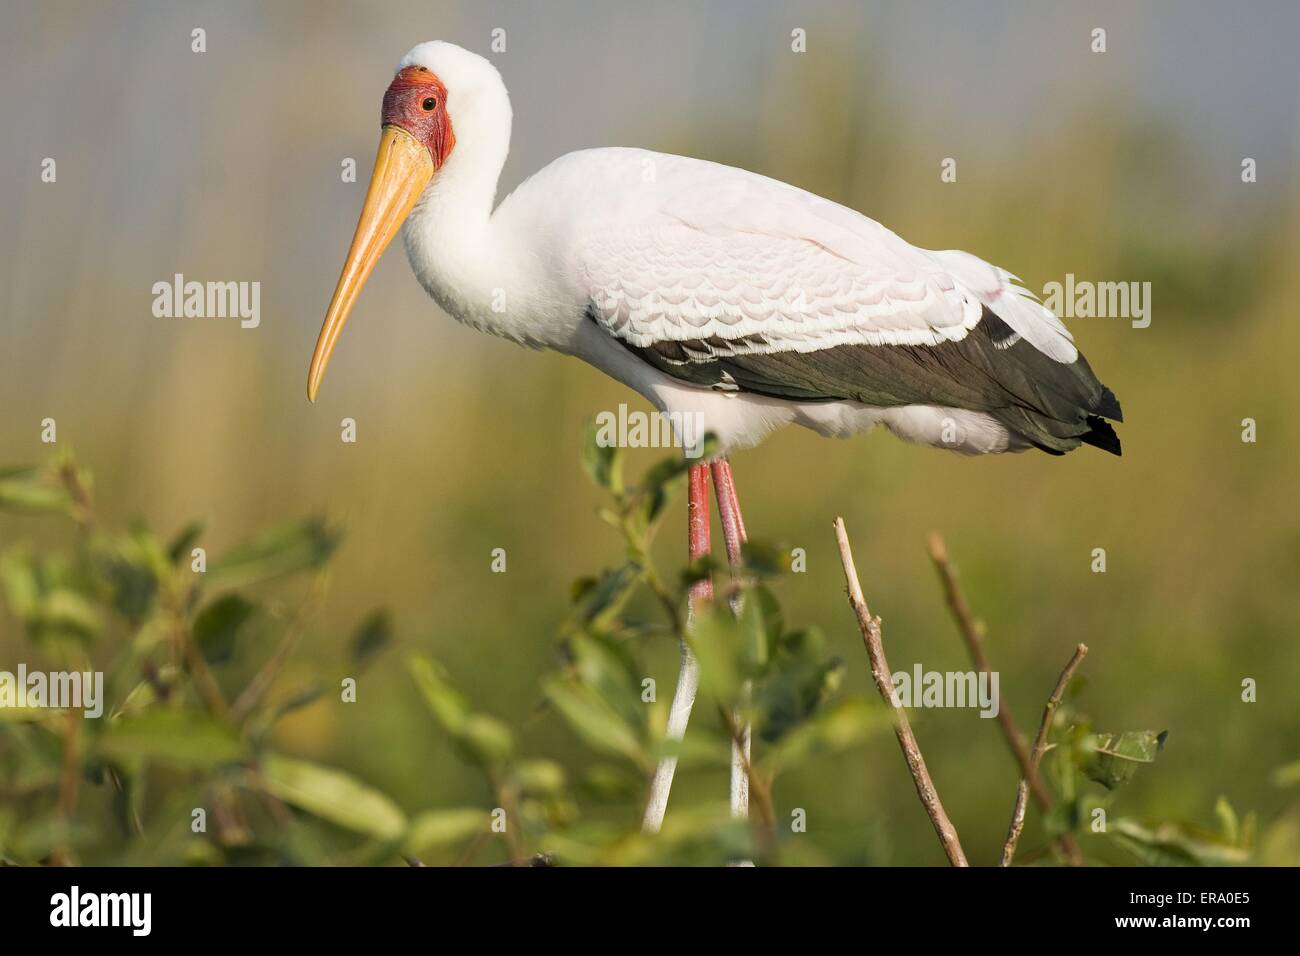 yellow-billed stork Stock Photo